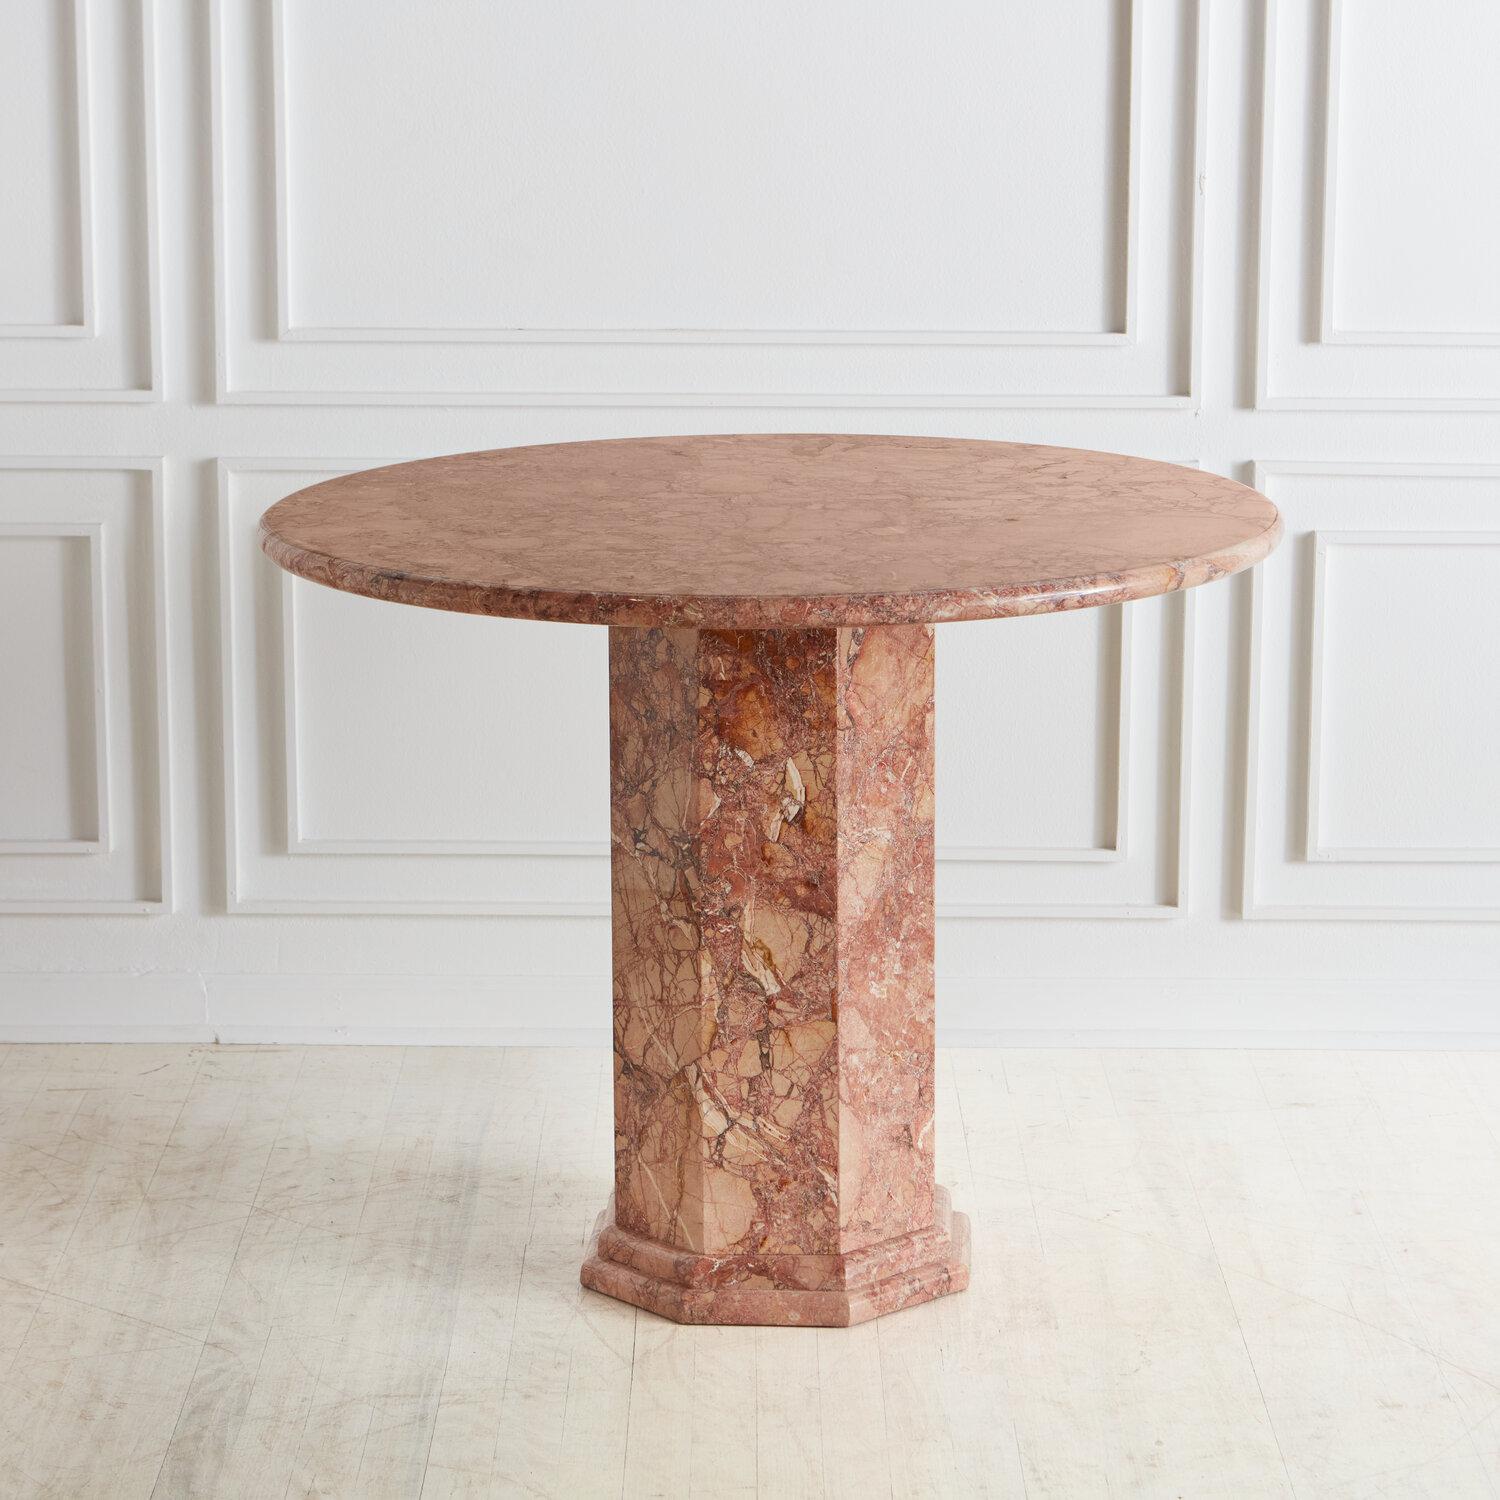 Ein atemberaubender, von South Loop Loft selbst entworfener Esstisch oder Eingangstisch aus Marmor. Dieser Tisch hat eine runde Platte, die auf einem sechseckigen, auf Gehrung geschnittenen Sockel ruht, mit einem Bandkanten-Detail.

Dieser Tisch ist